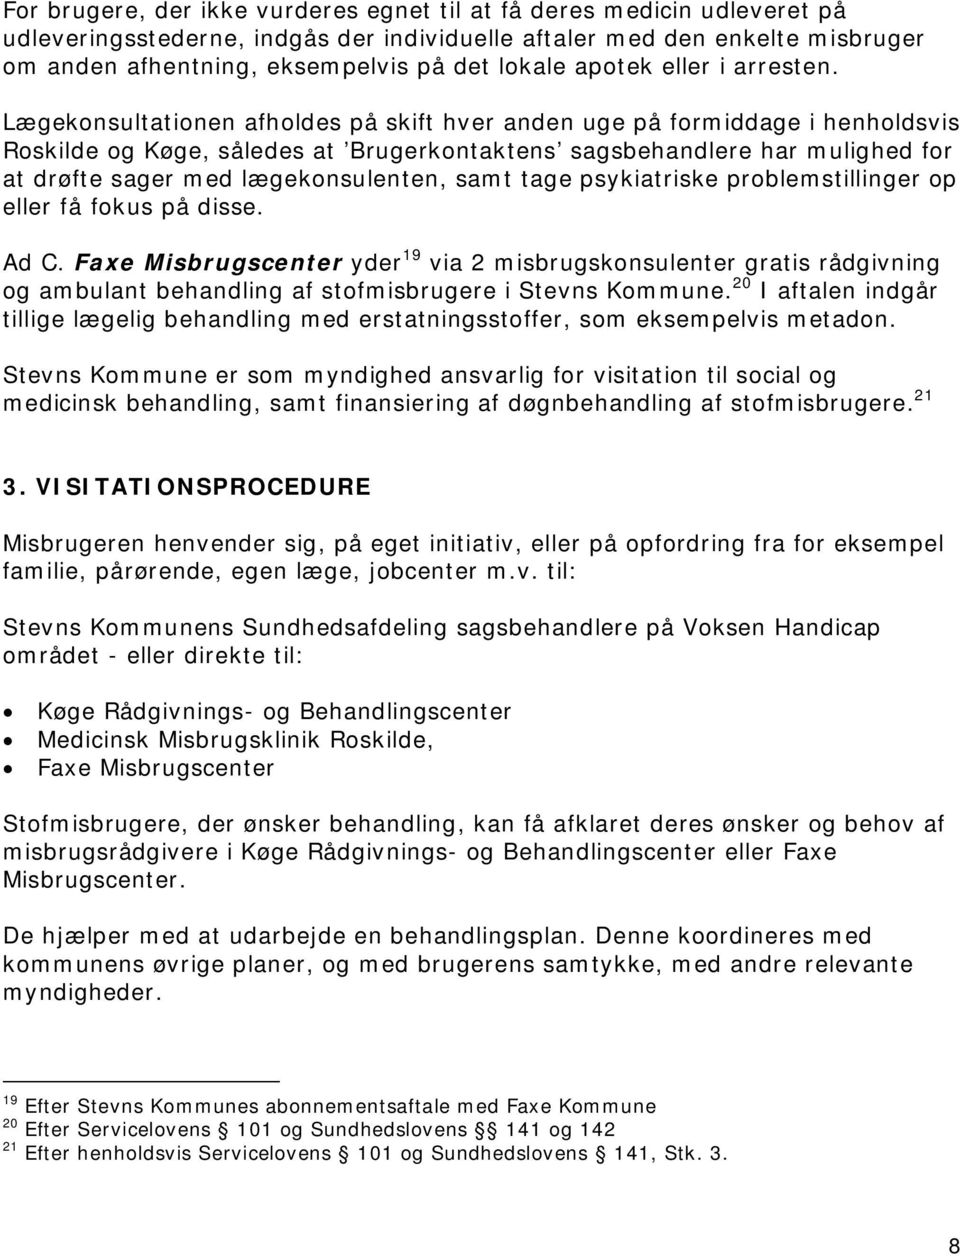 Lægekonsultationen afholdes på skift hver anden uge på formiddage i henholdsvis Roskilde og Køge, således at Brugerkontaktens sagsbehandlere har mulighed for at drøfte sager med lægekonsulenten, samt